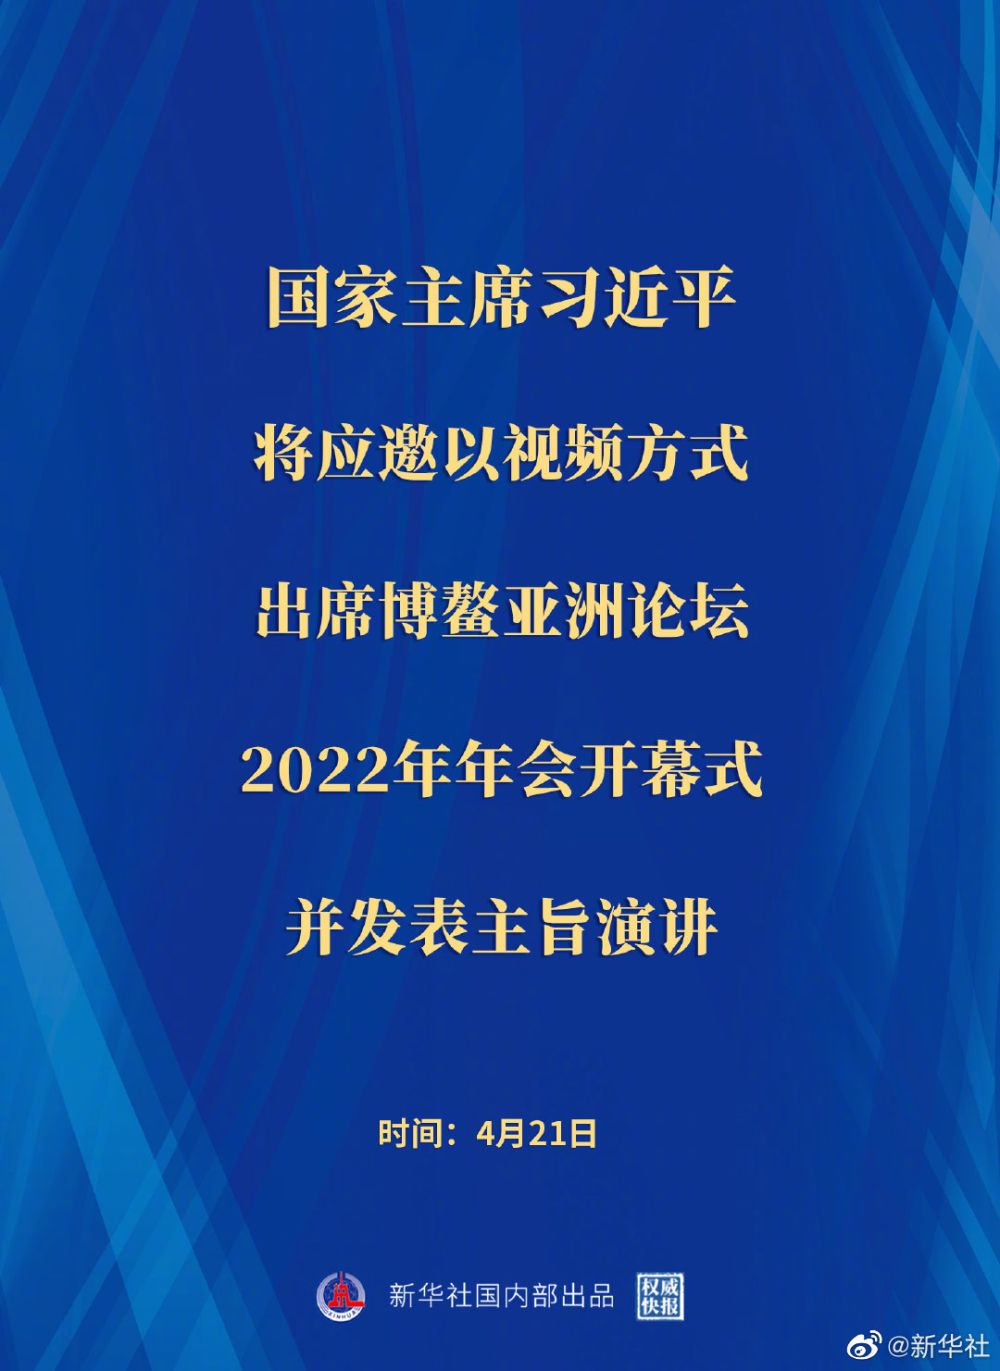 权威快报 | 习近平将出席博鳌亚洲论坛2022年年会开幕式